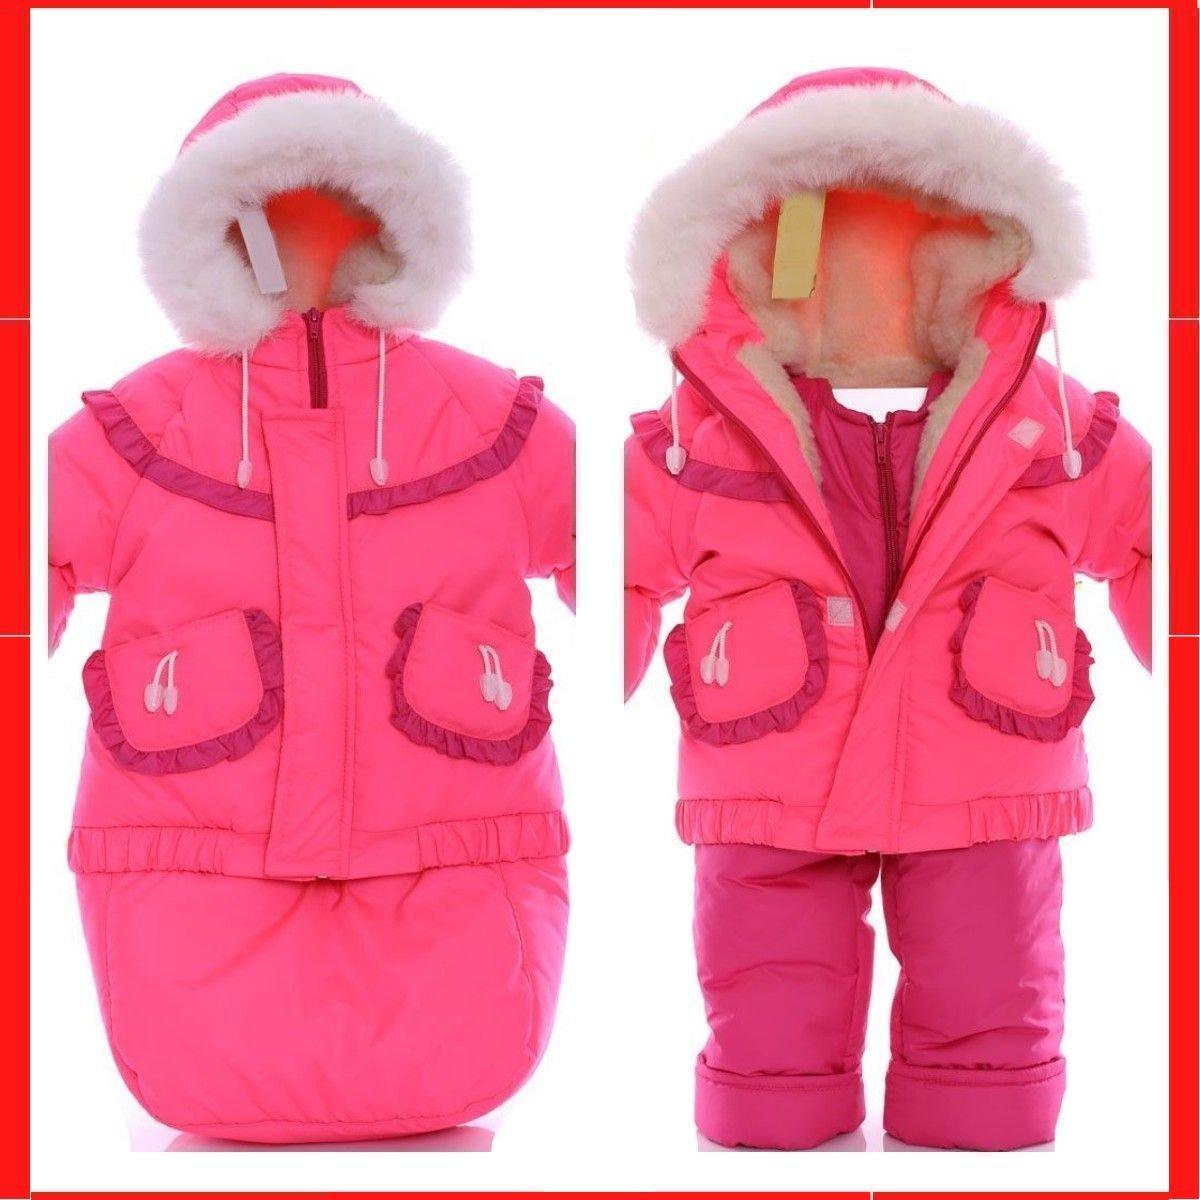 

Зимний детский костюм-тройка (конверт+курточка+полукомбинезон) Детские зимние комбинезоны Комбинезон для детей